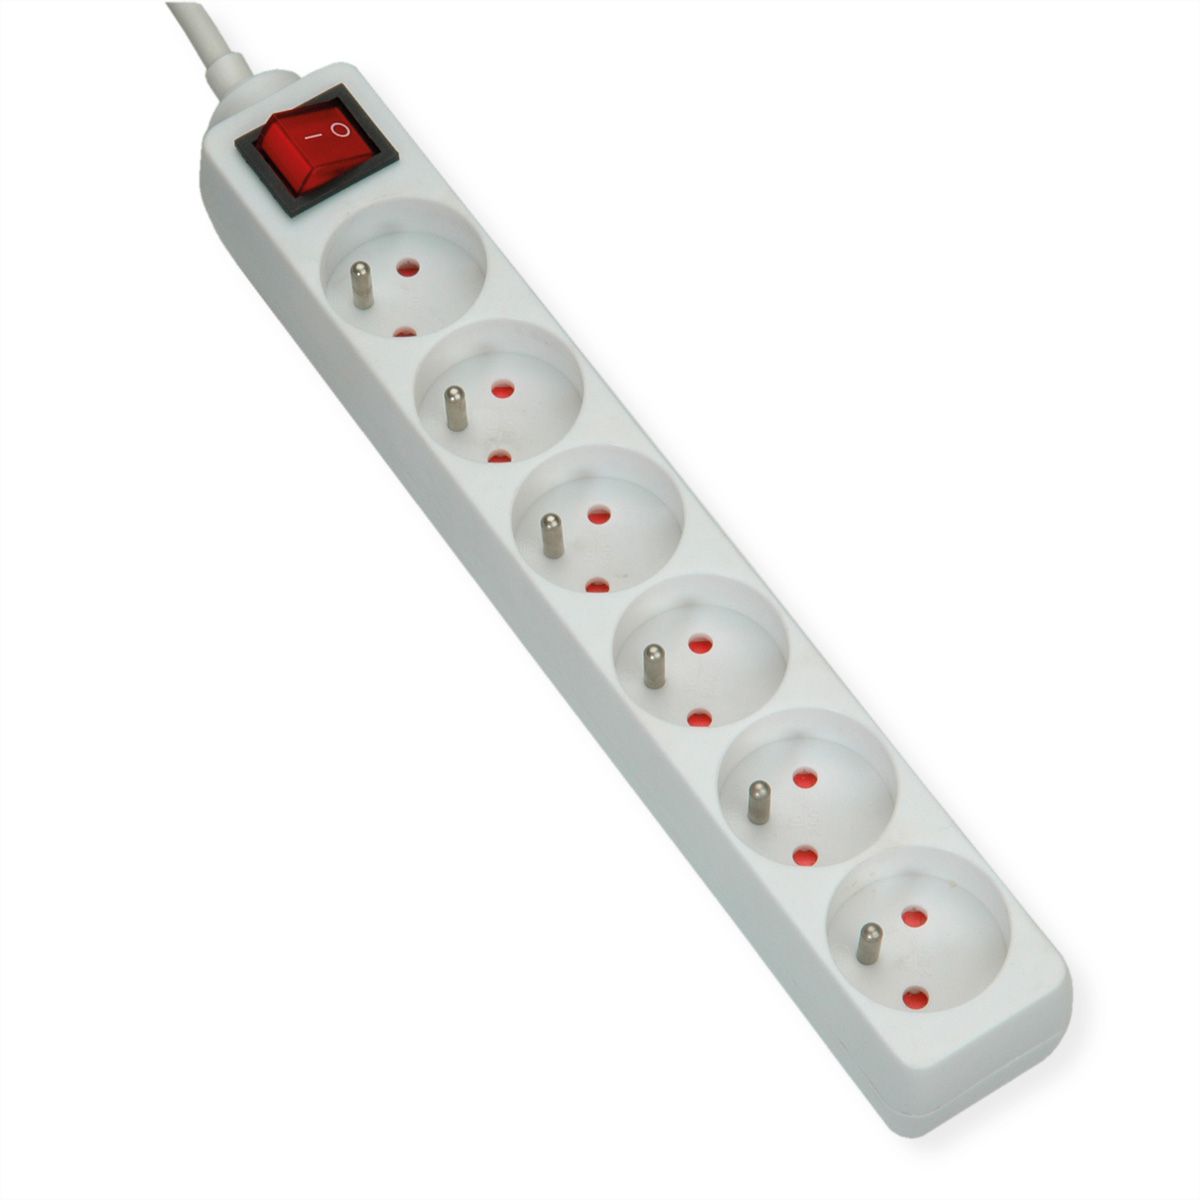 Multiprise avec interrupteurs individuels, 5 prises type 13, blanc